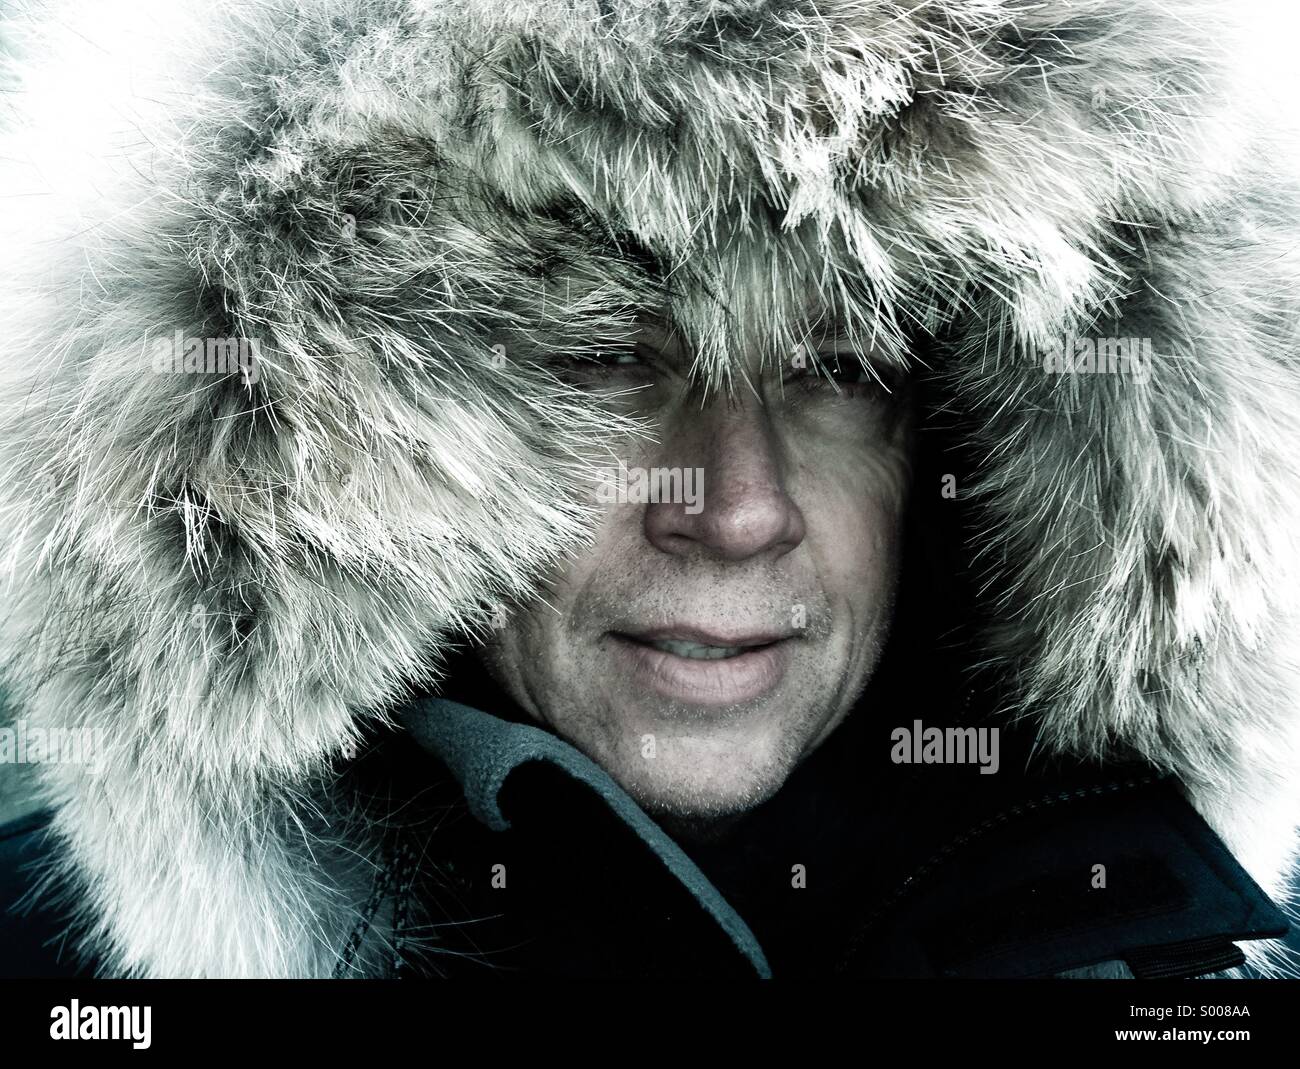 Arctic explorer bretelle se stesso contro le condizioni meteorologiche estreme. Foto Stock